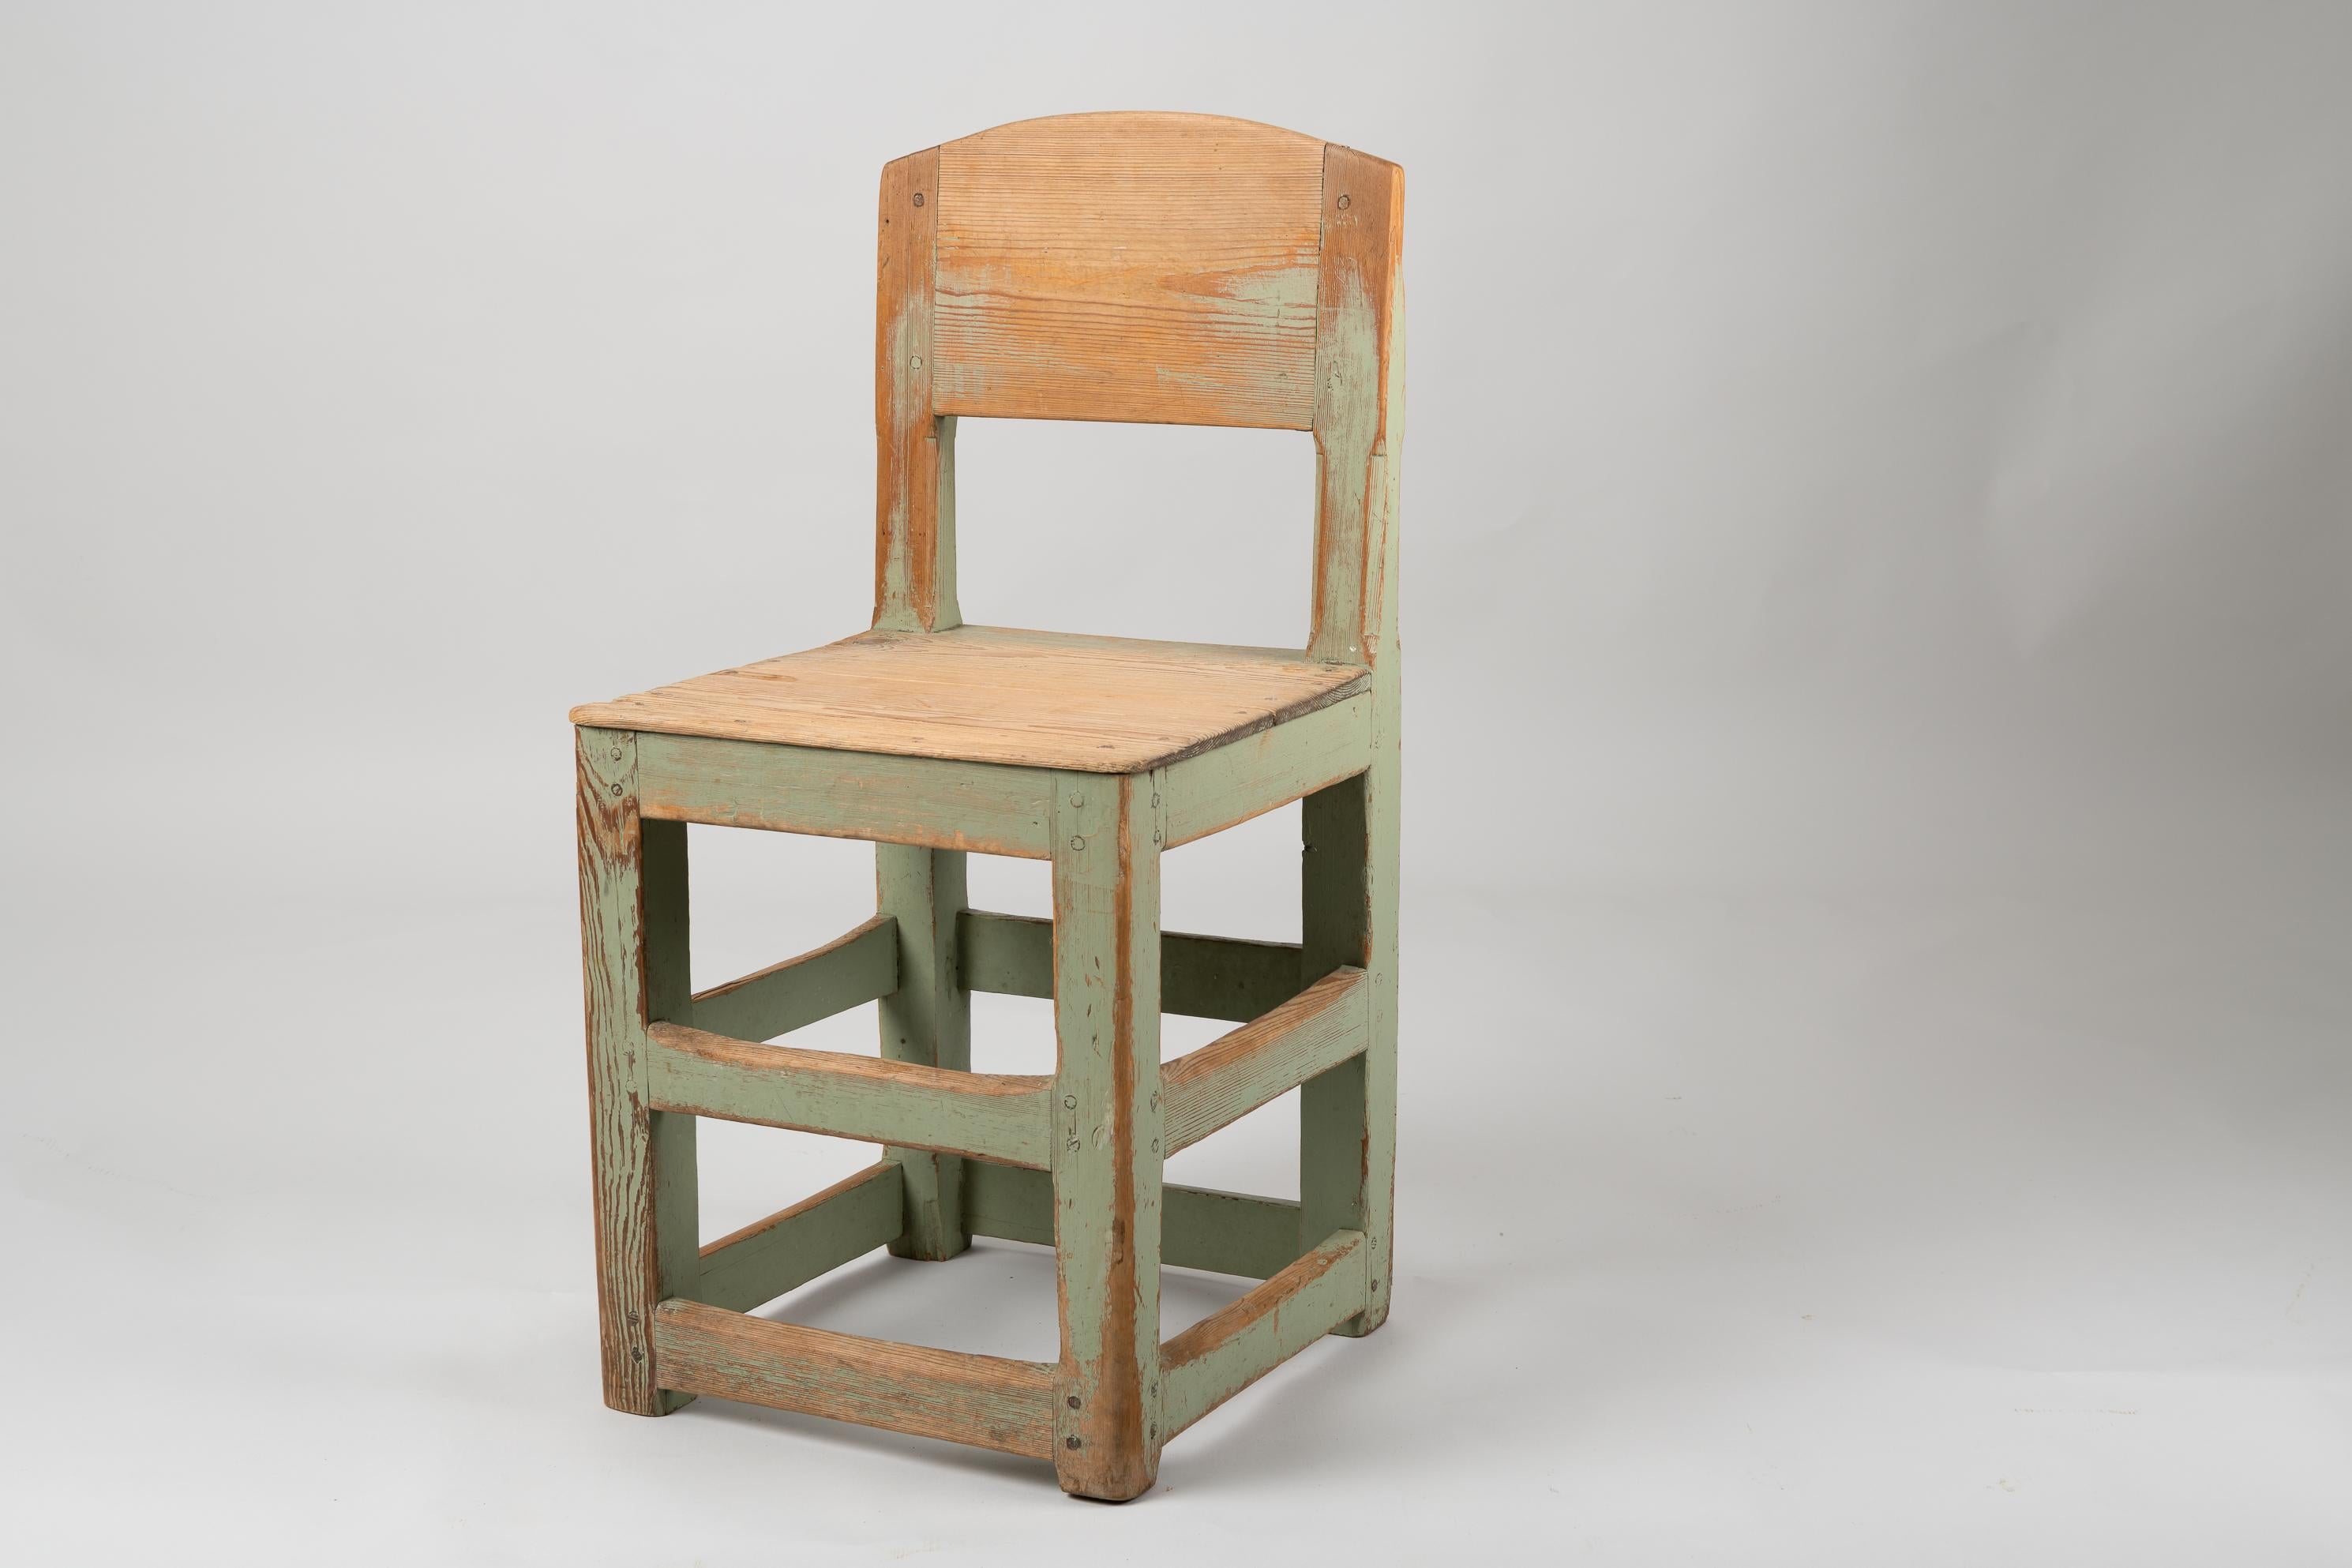 Rustikaler Stuhl im Barockstil aus Nordschweden. Der Stuhl ist ein Landhausmöbel aus der ersten Hälfte des 19. Jahrhunderts. Das Modell selbst stammt aus der Barockzeit, d. h. aus der Mitte des 18. Jahrhunderts, aber der Stil hat sich im 18. und 19.